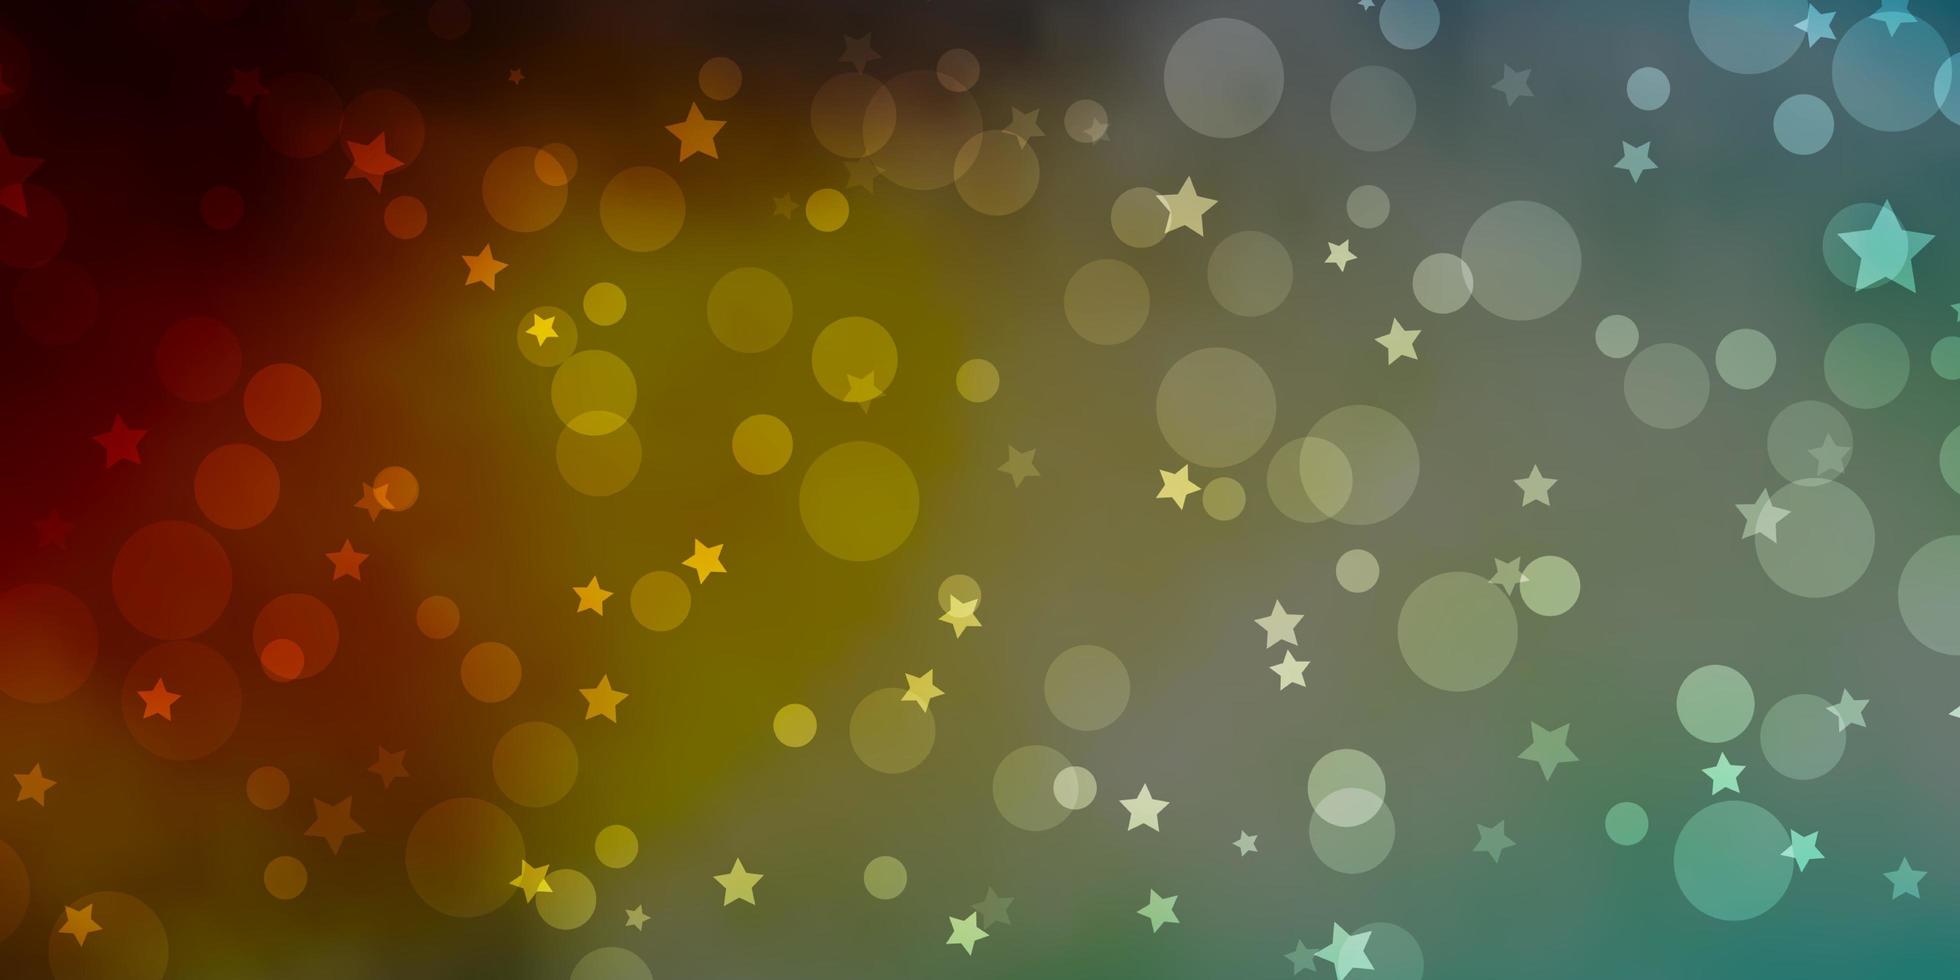 hellblauer, gelber Vektorhintergrund mit Kreisen, Sternen. bunte scheiben, sterne auf einfachem farbverlaufshintergrund. Design für Tapeten, Stoffhersteller. vektor